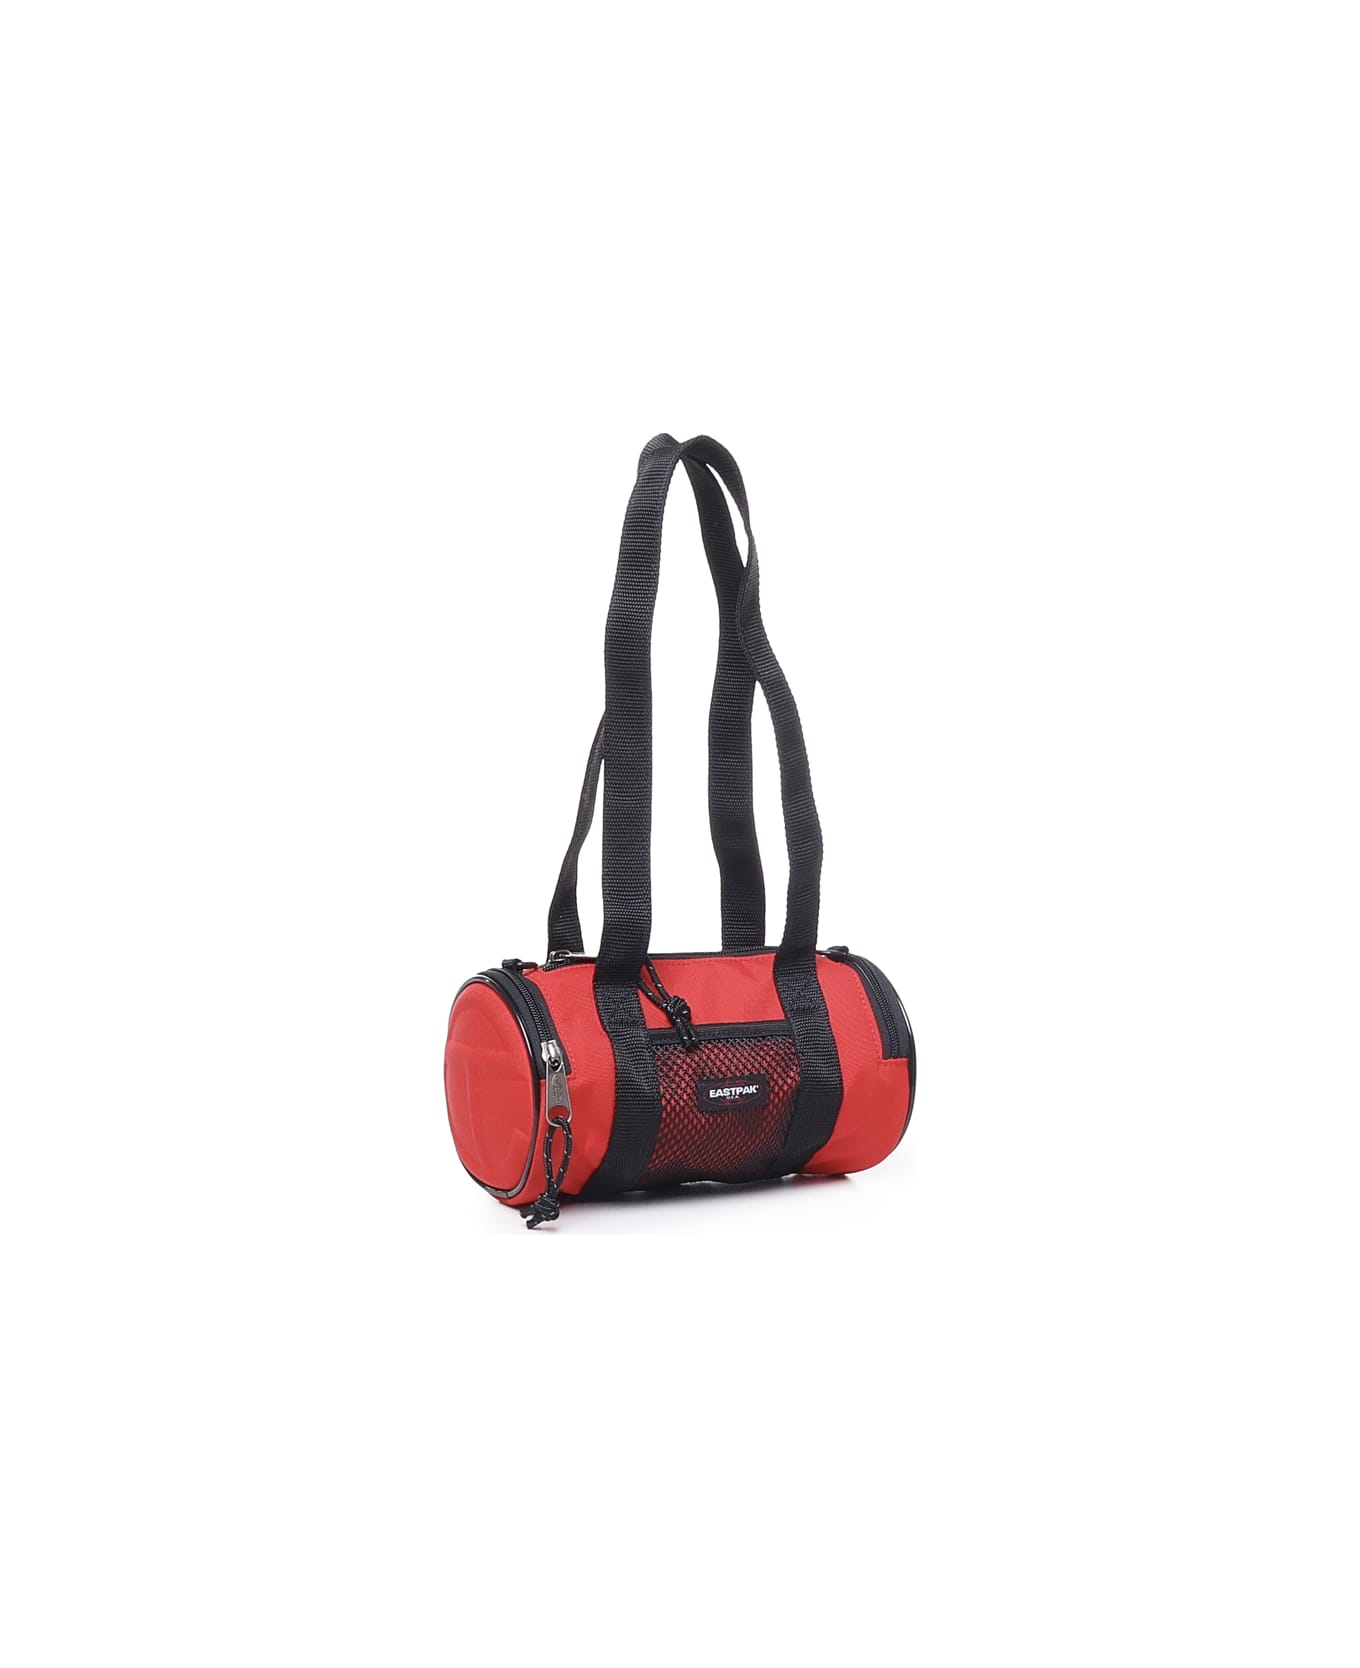 Telfar Cylindrical Messenger Bag For Telfar - Red バッグ